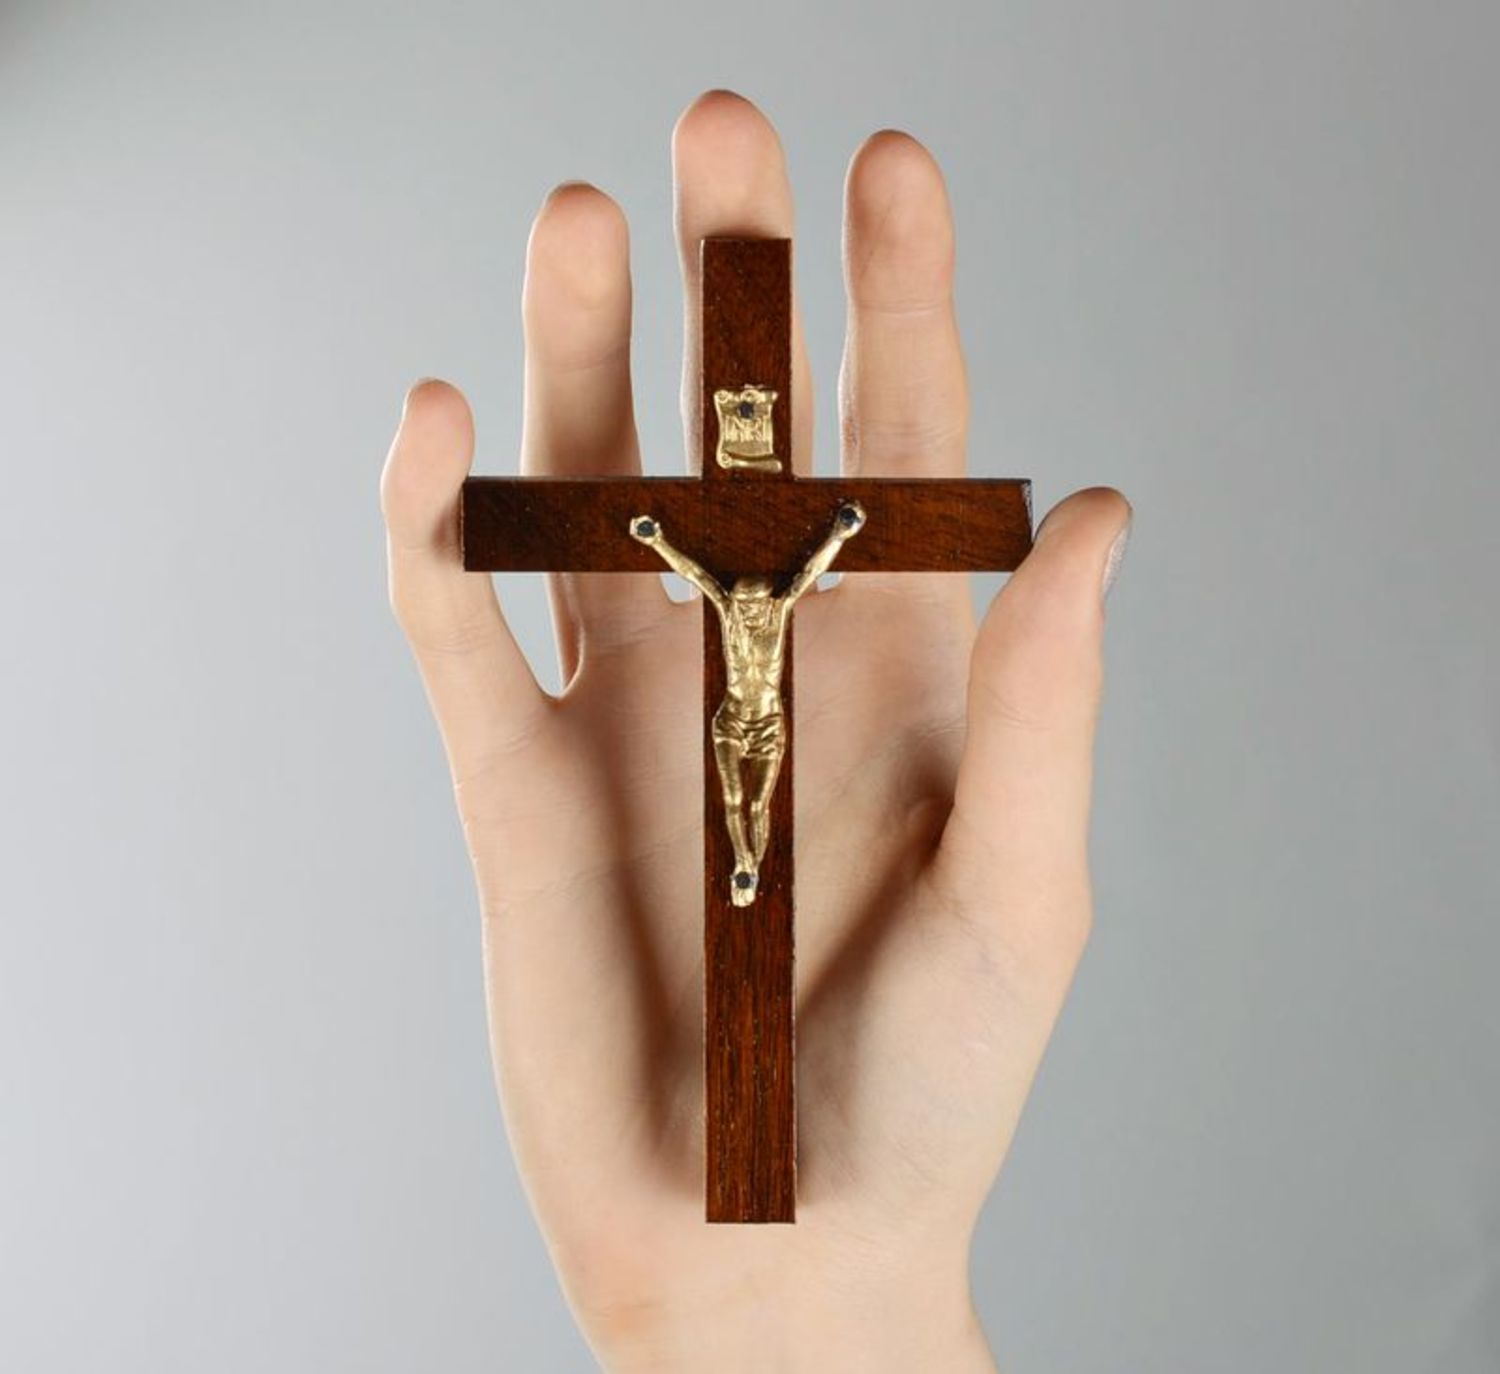 Small wall crucifix photo 1